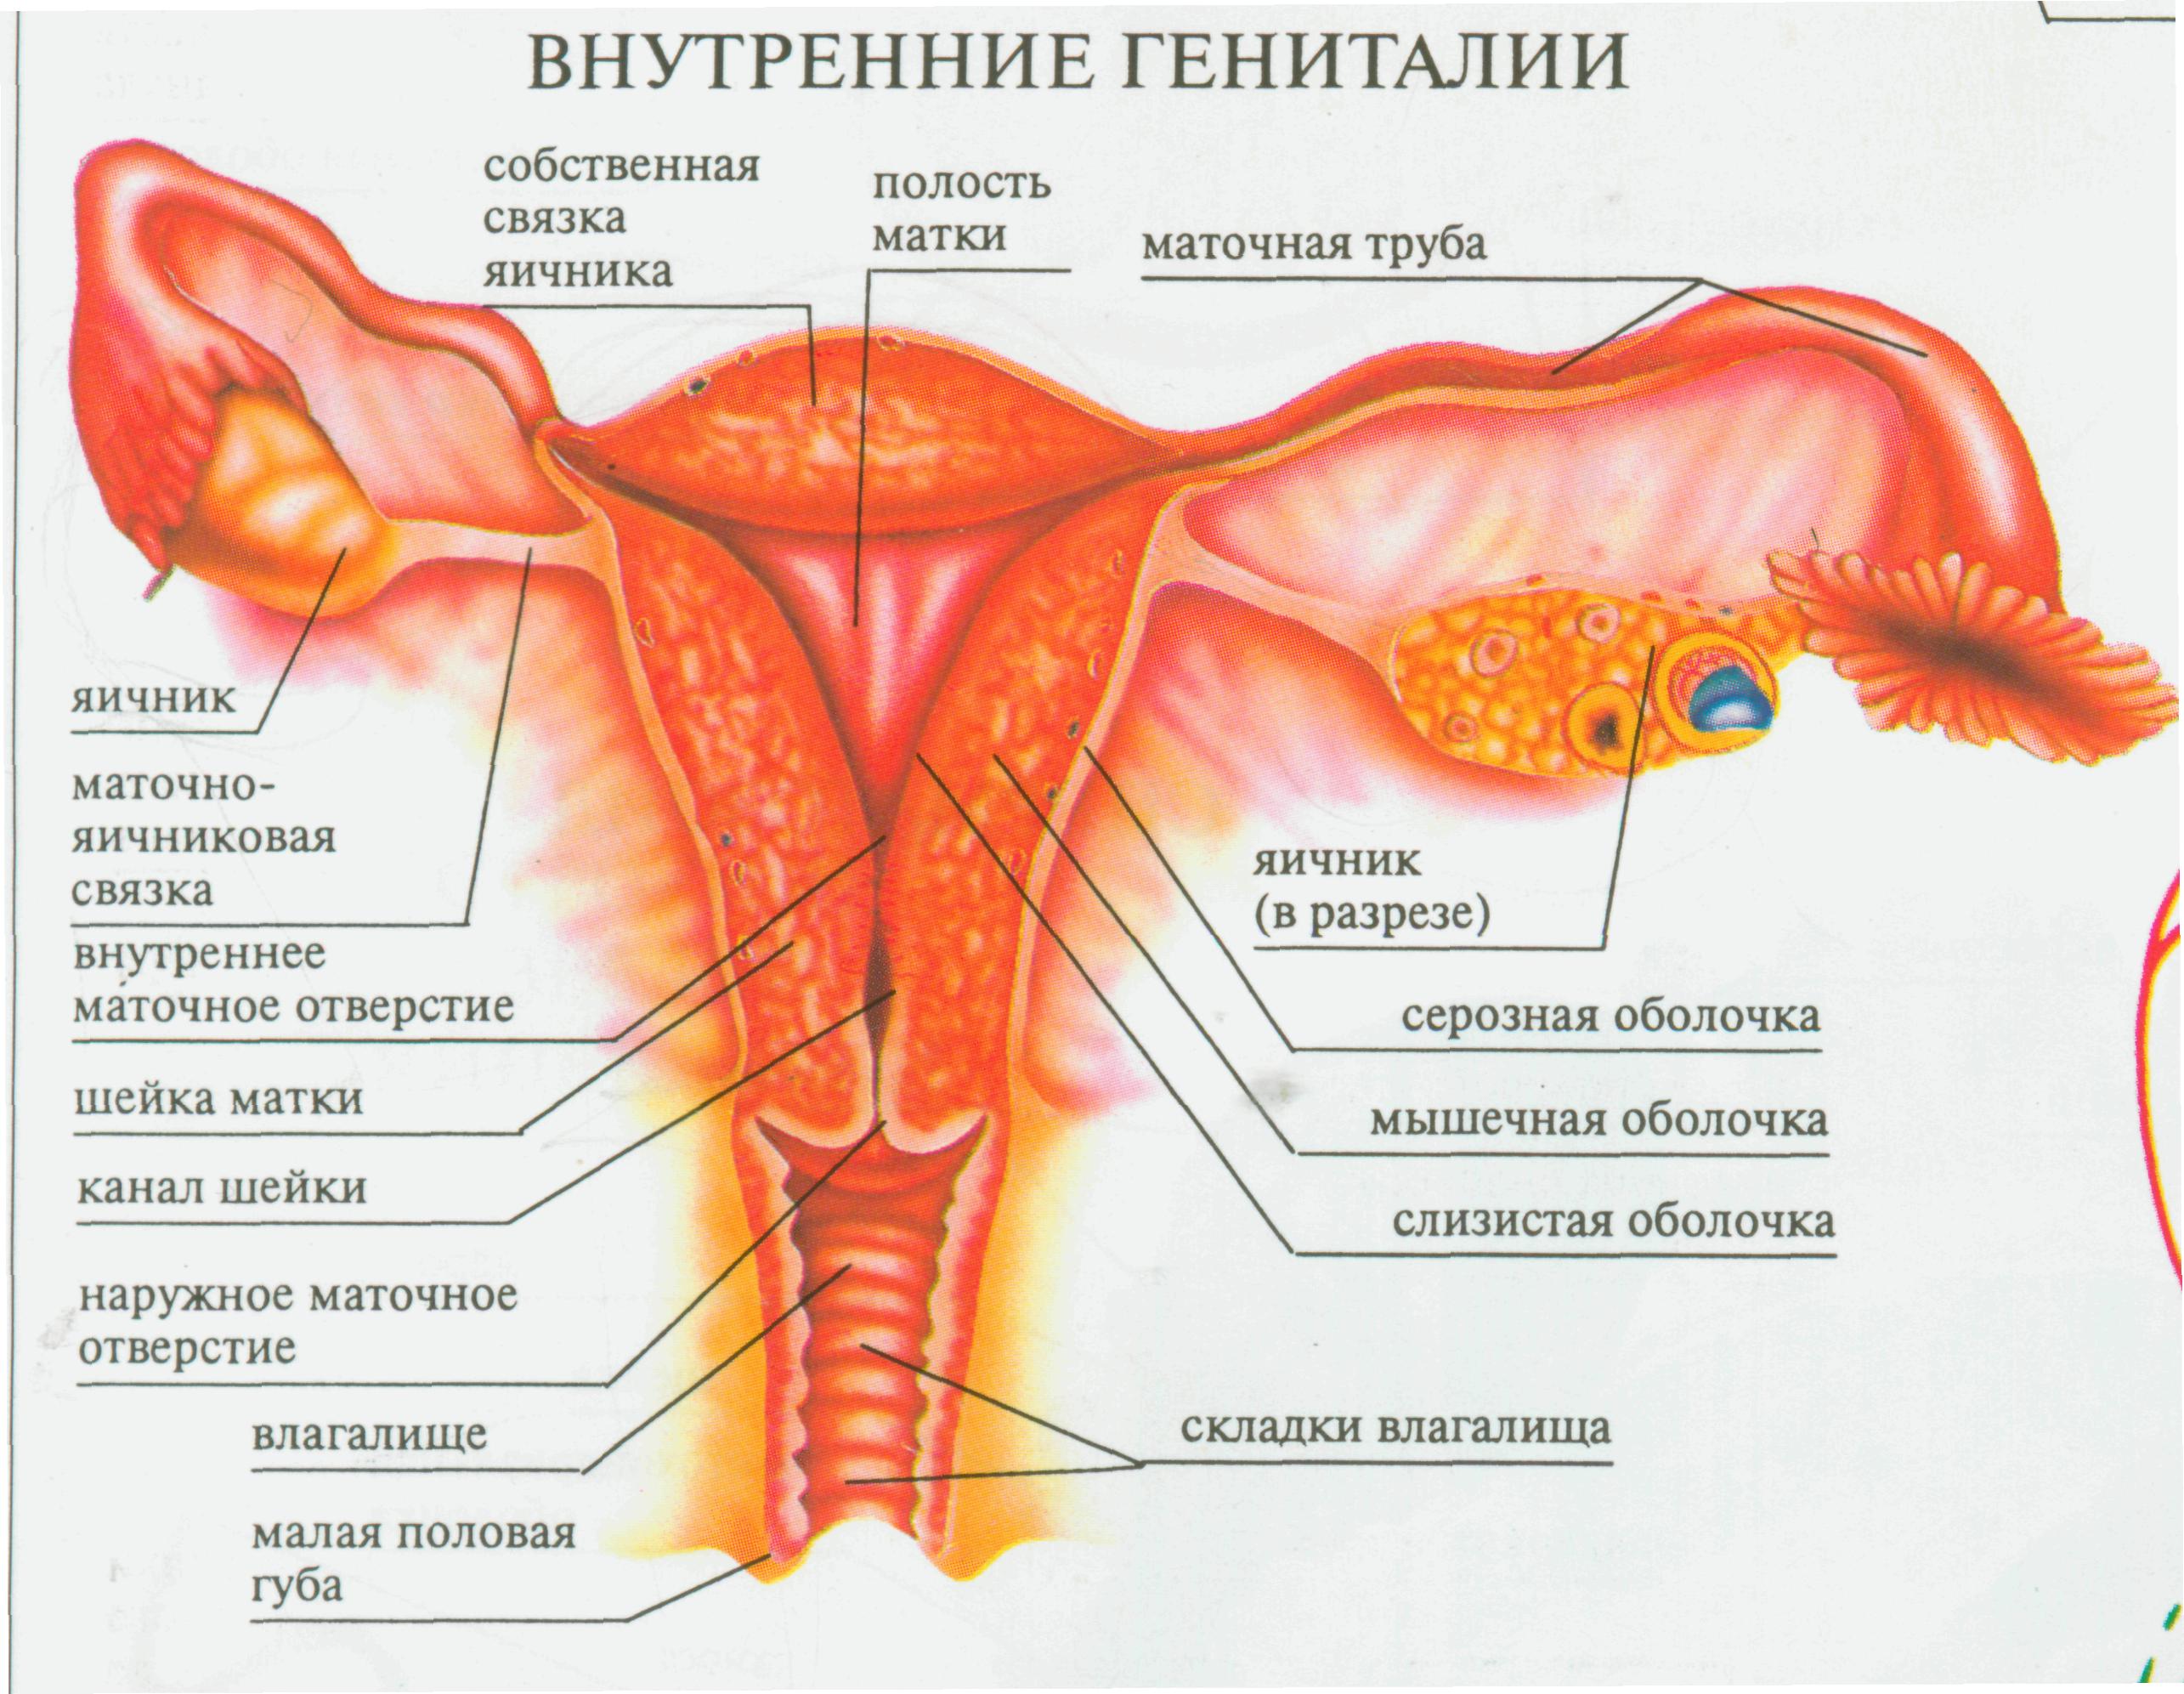 10 женских органов. Женский половой орган. Строение половых органов женщины. Строение женских.половых органов внутренних. Схема половых органов женщины.